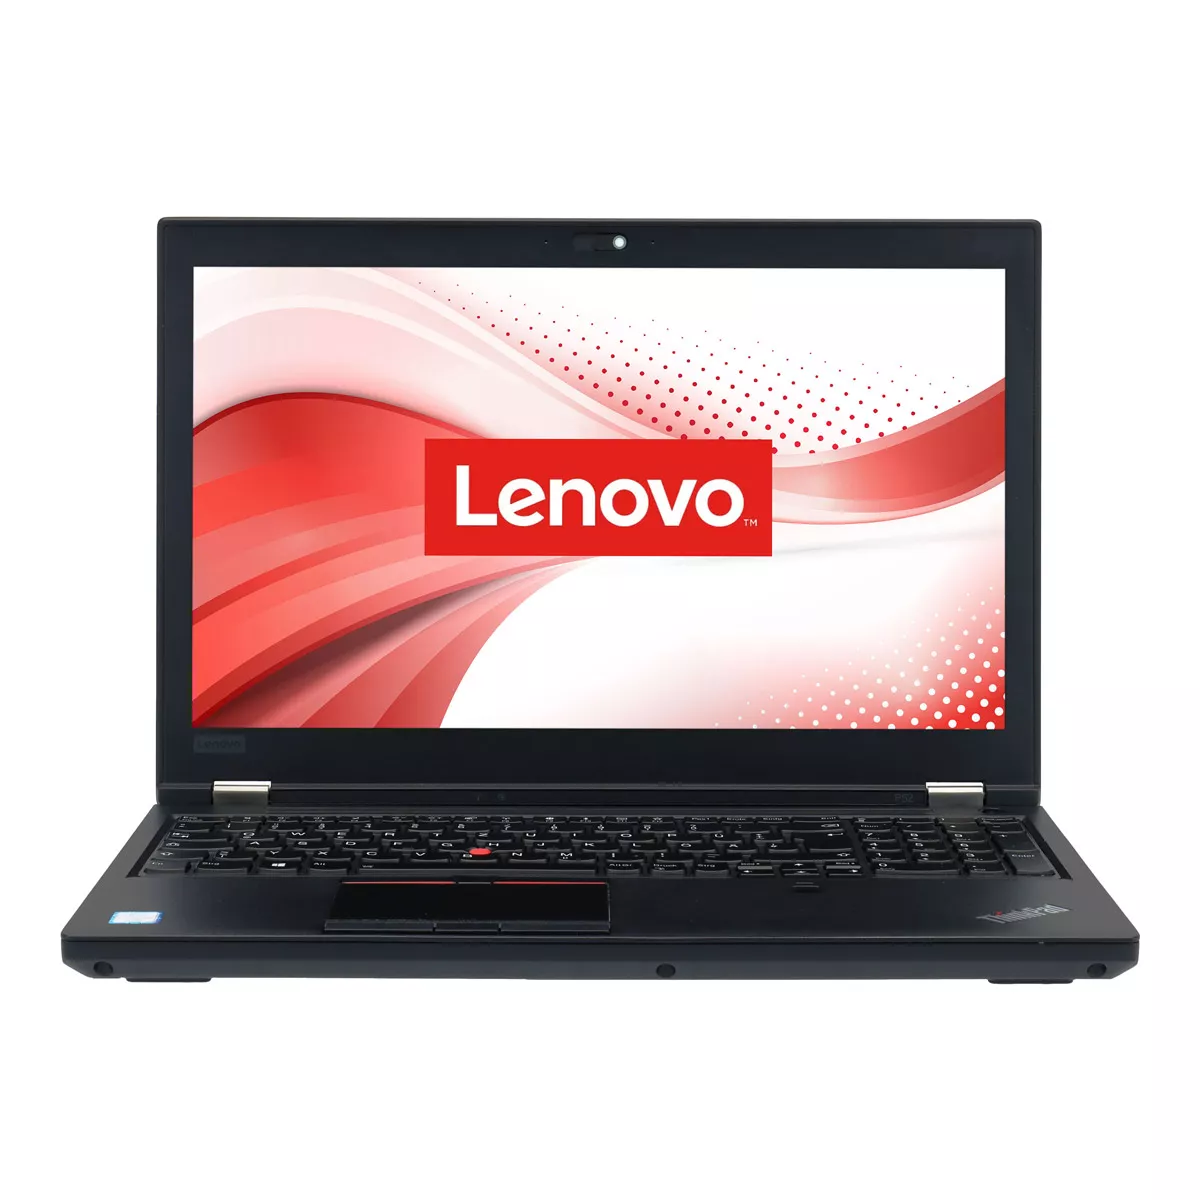 Lenovo ThinkPad P52 Core i7 8850H nVidia Quadro P2000M 32 GB 500 GB M.2 SSD Webcam A